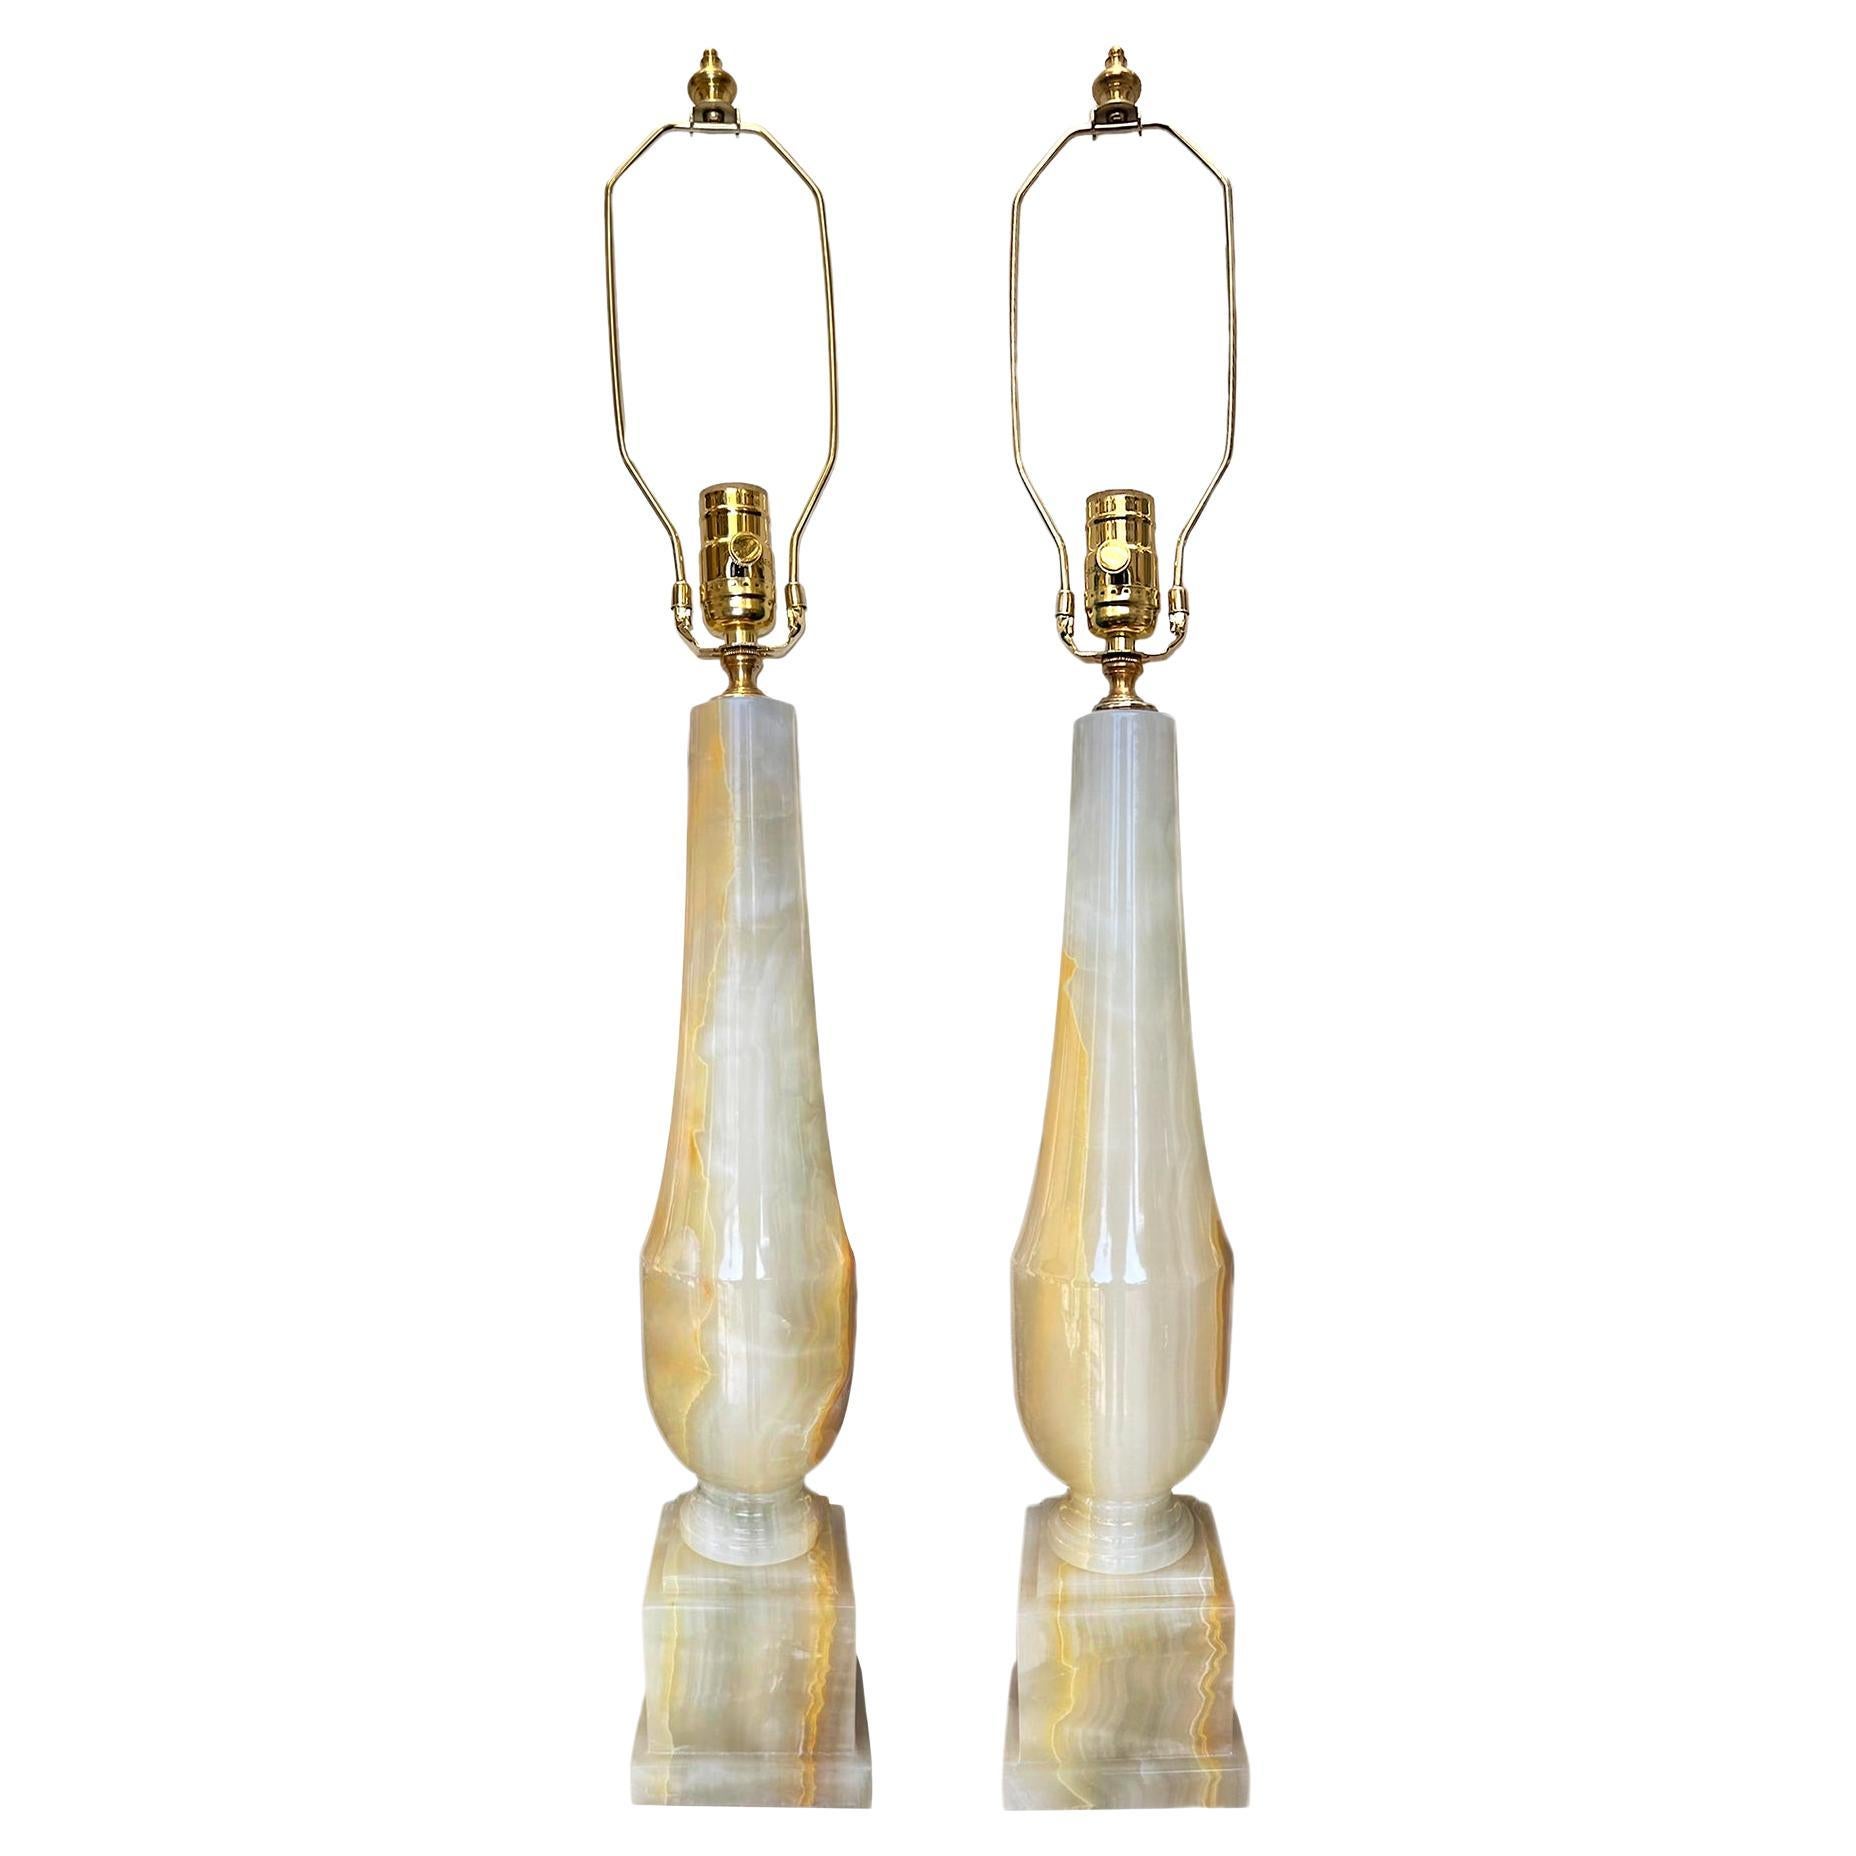 Pair of Antique Italian Onyx Lamps